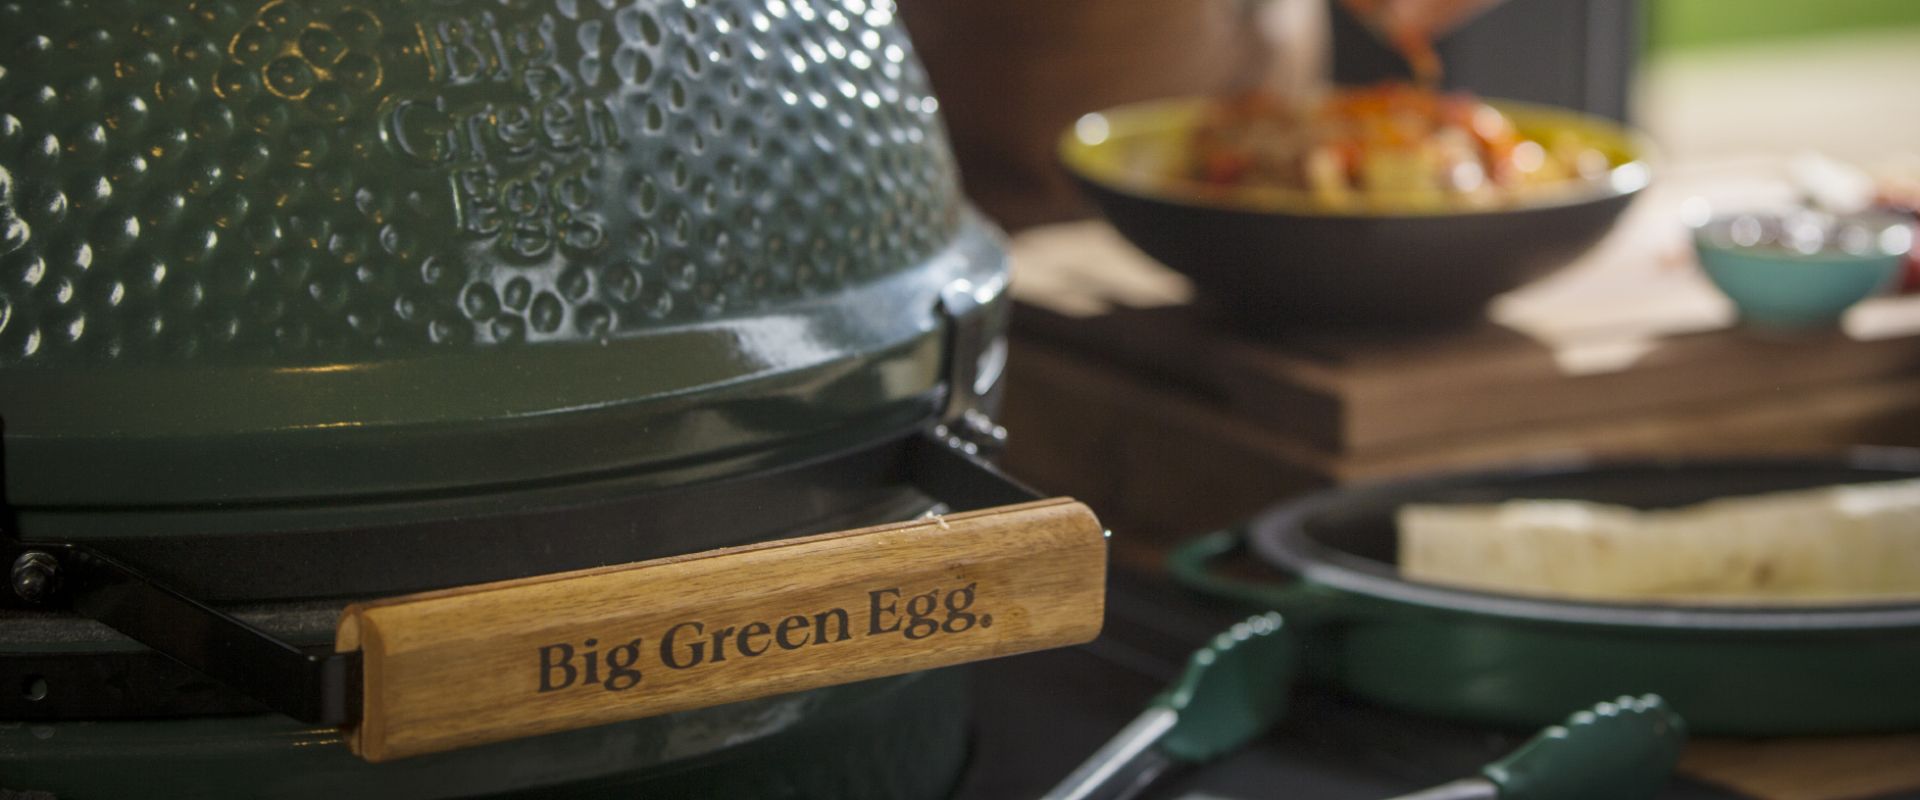 BIG GREEN EGG Grill